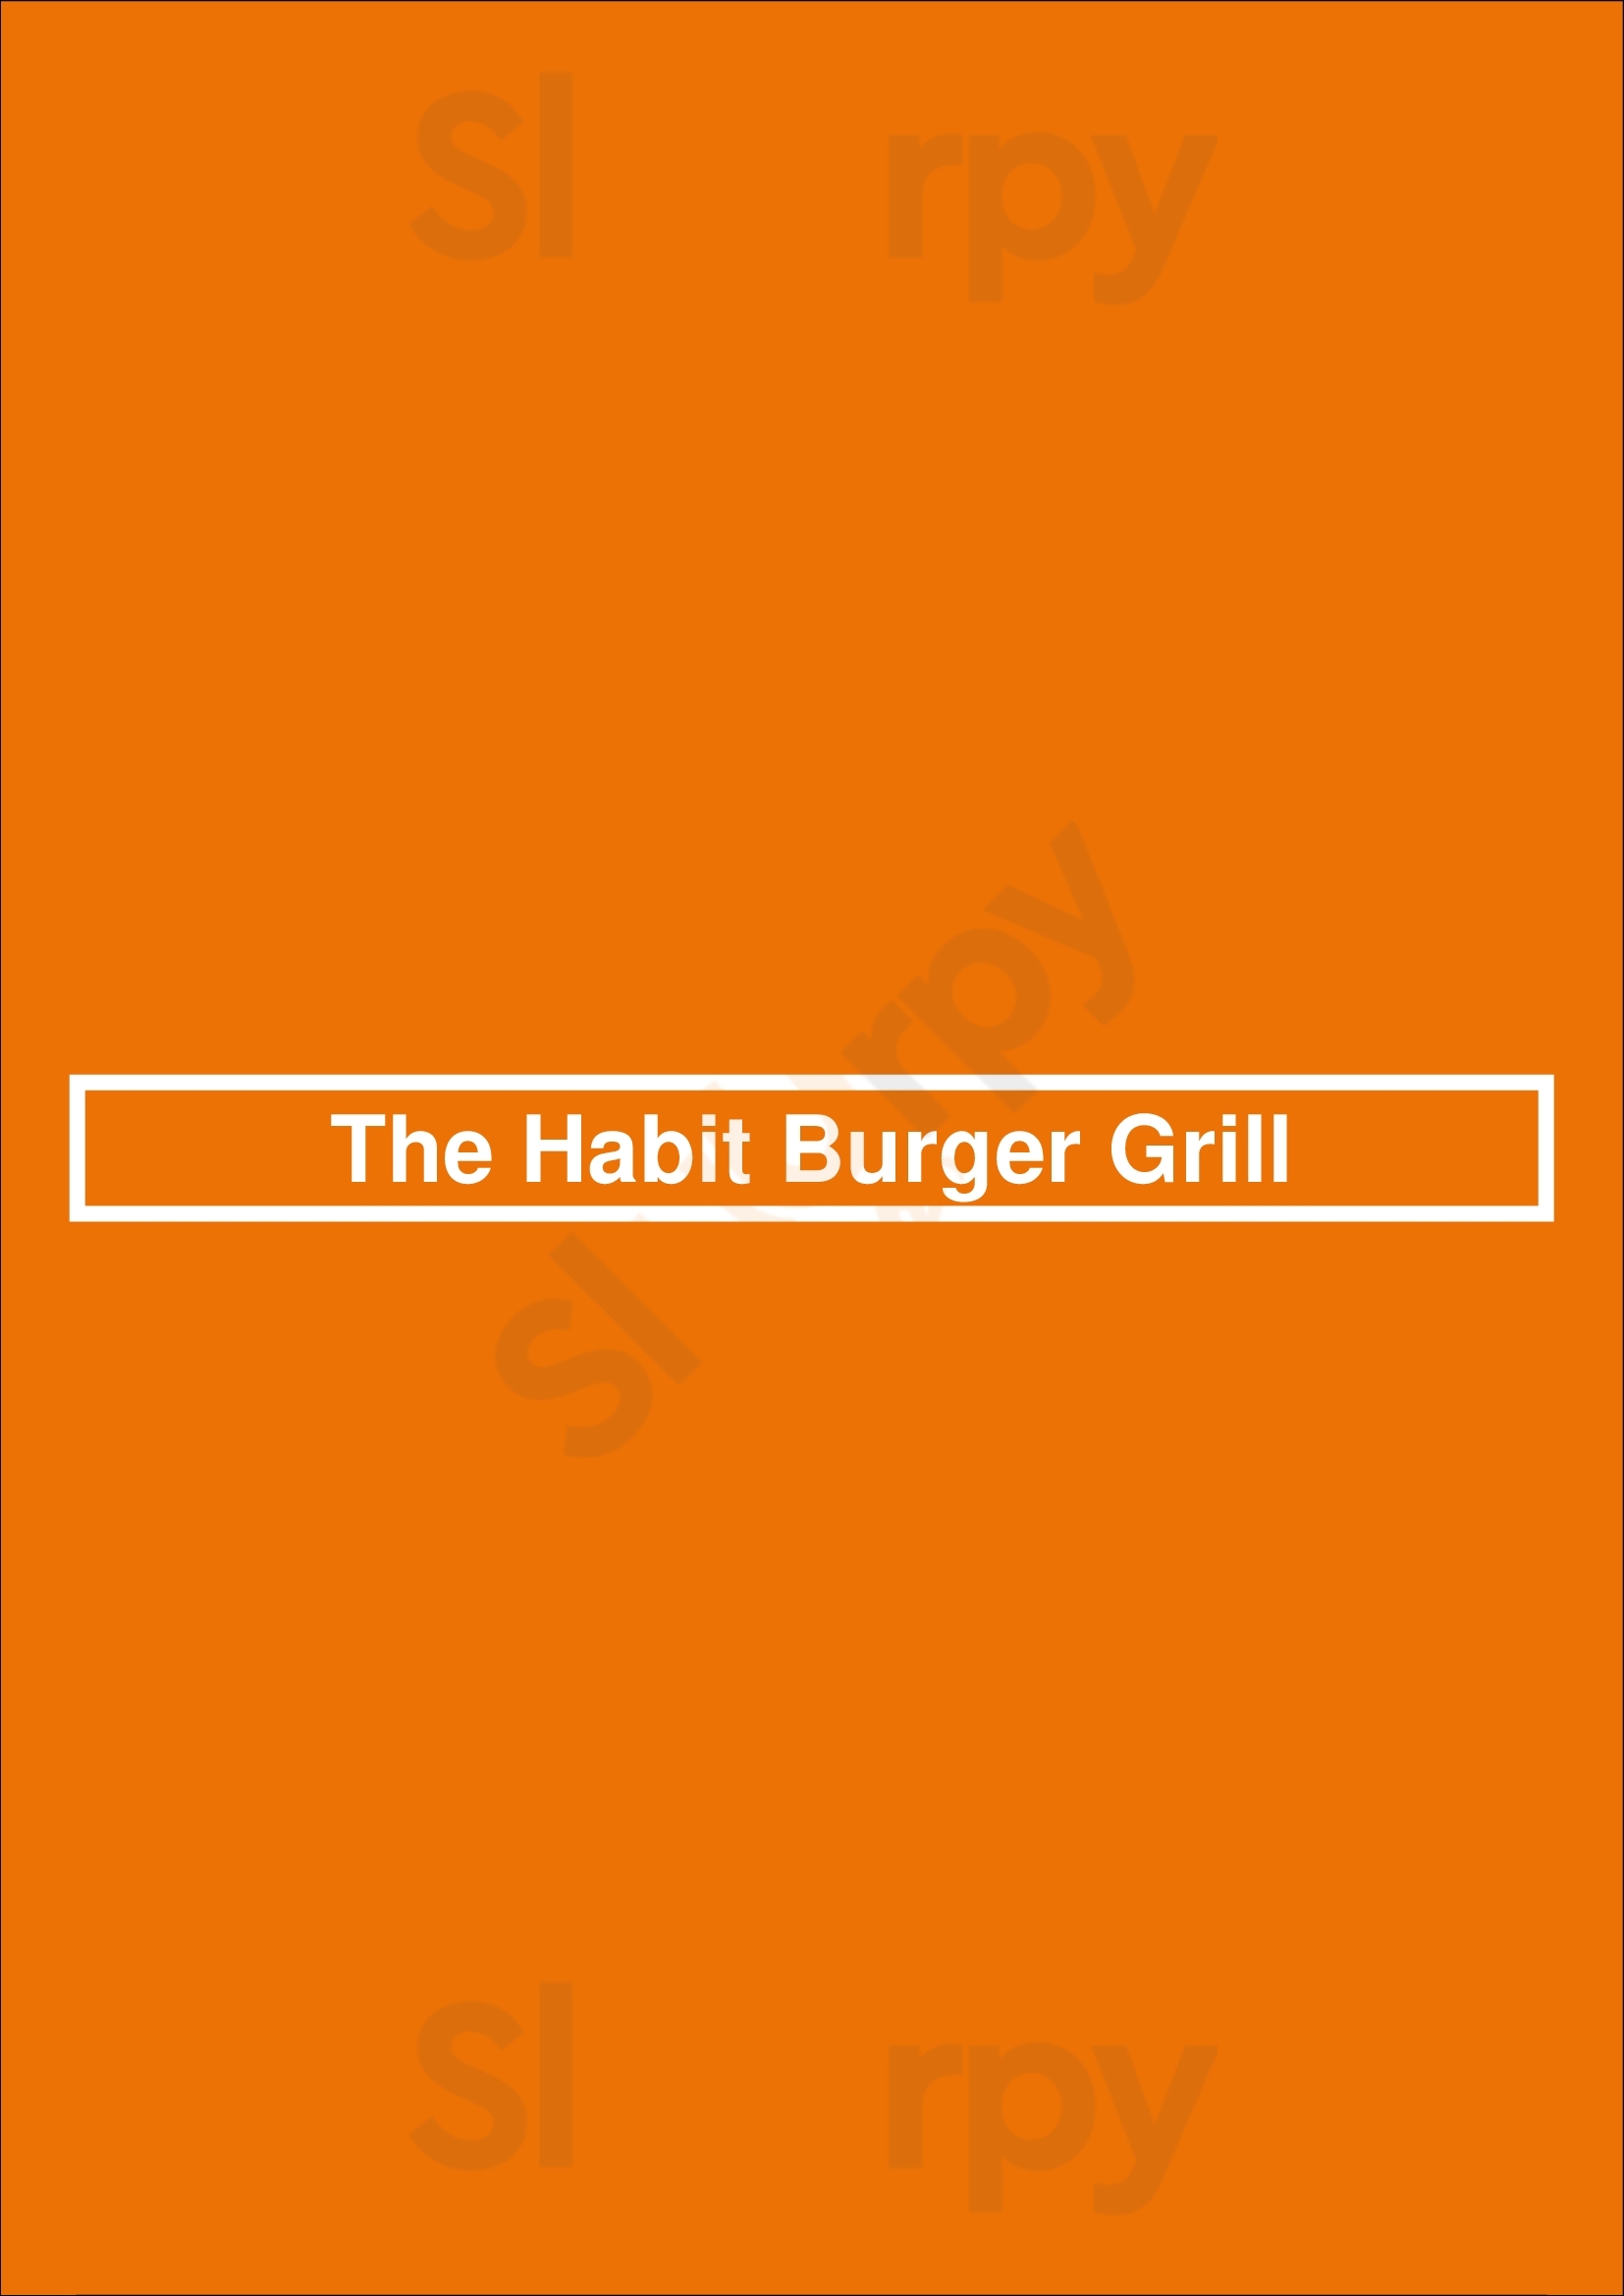 The Habit Burger Grill (drive-thru) Phoenix Menu - 1